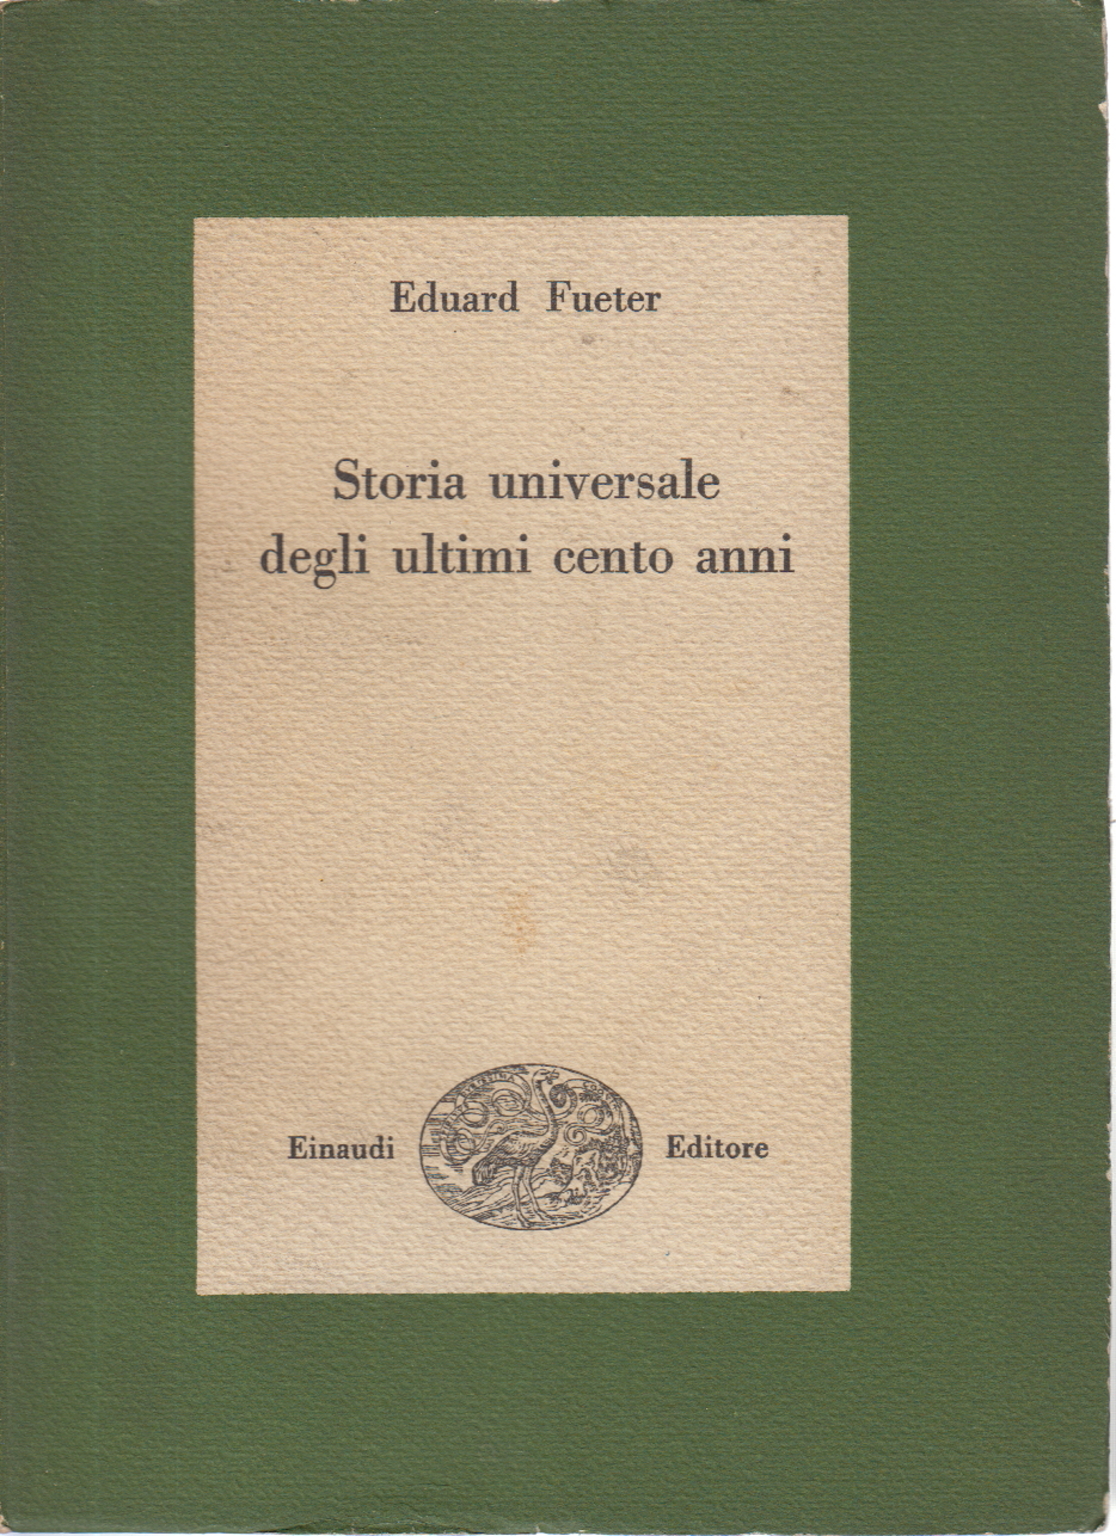 Storia universale degli ultimi cento anni 1815-192, Eduard Fueter